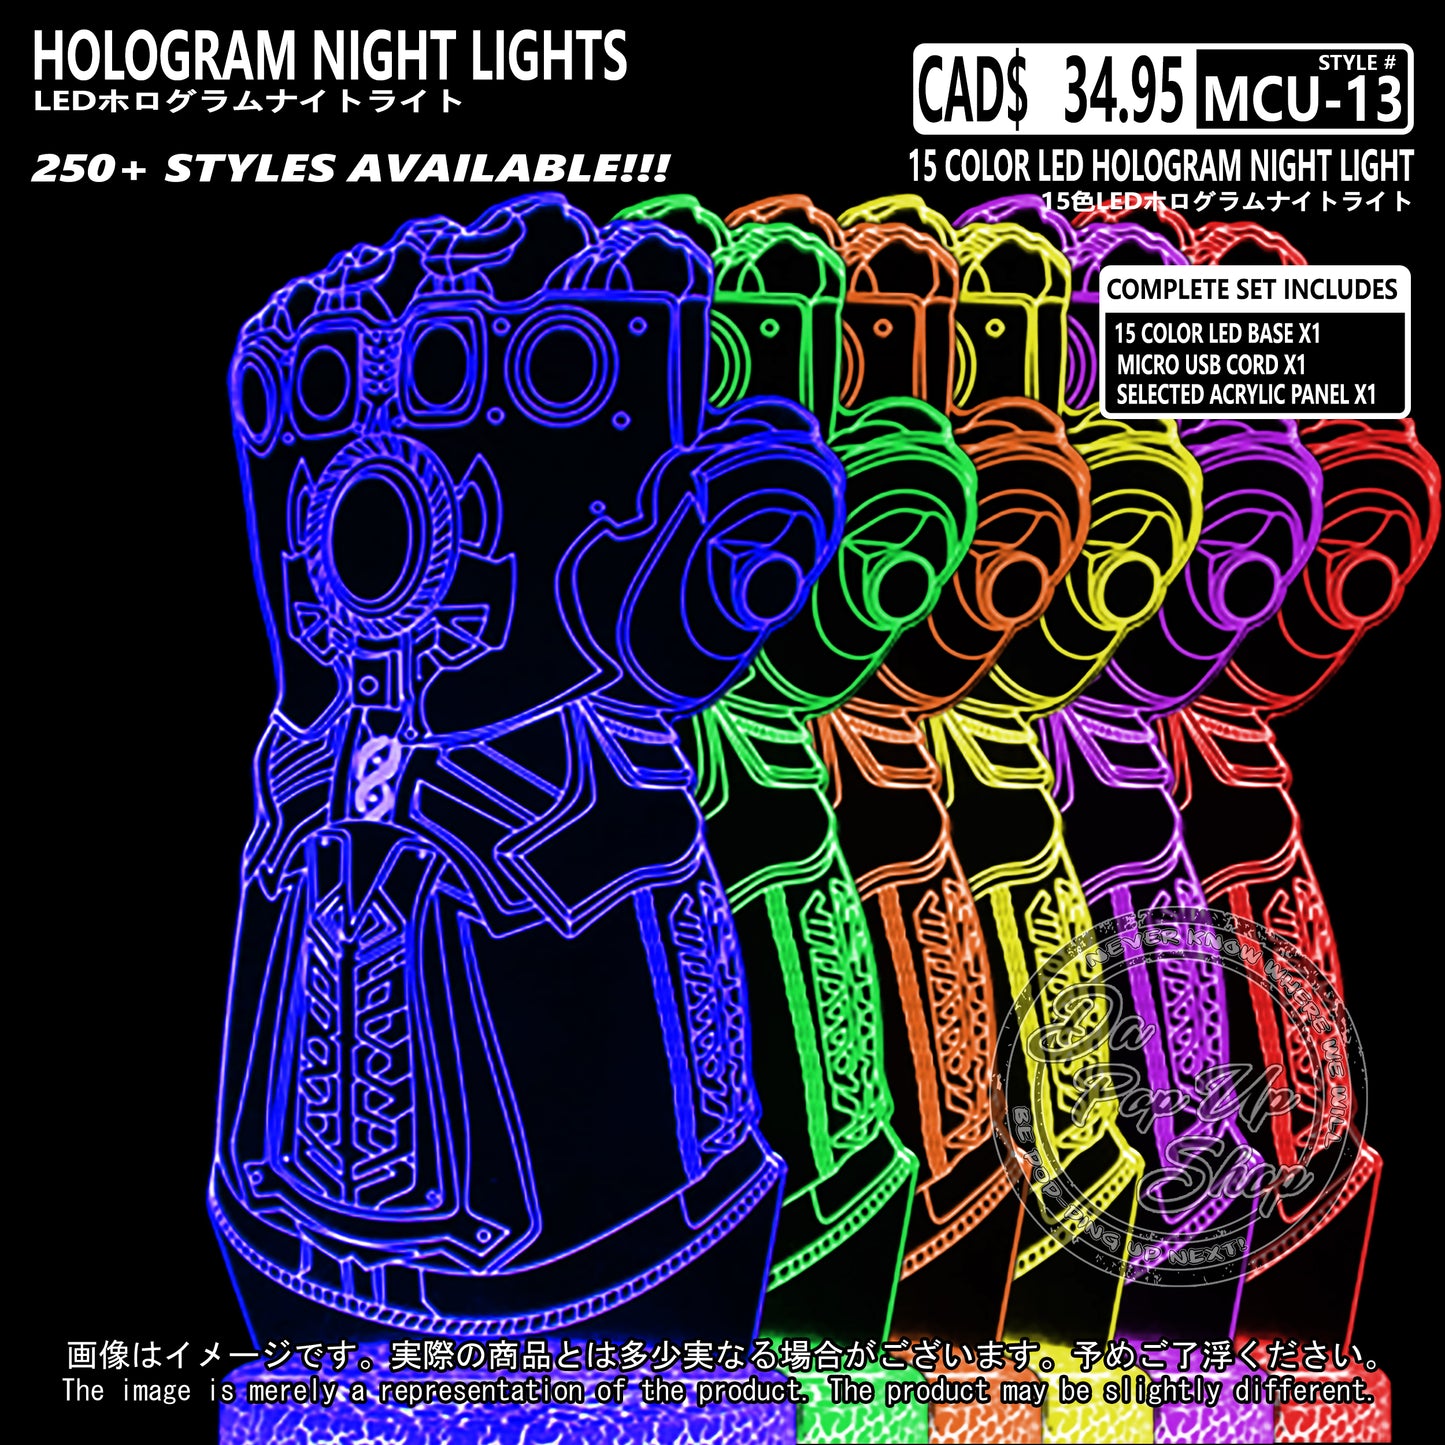 (MCU-13) MCU Marvel Cinematic Universal Hologram LED Night Light